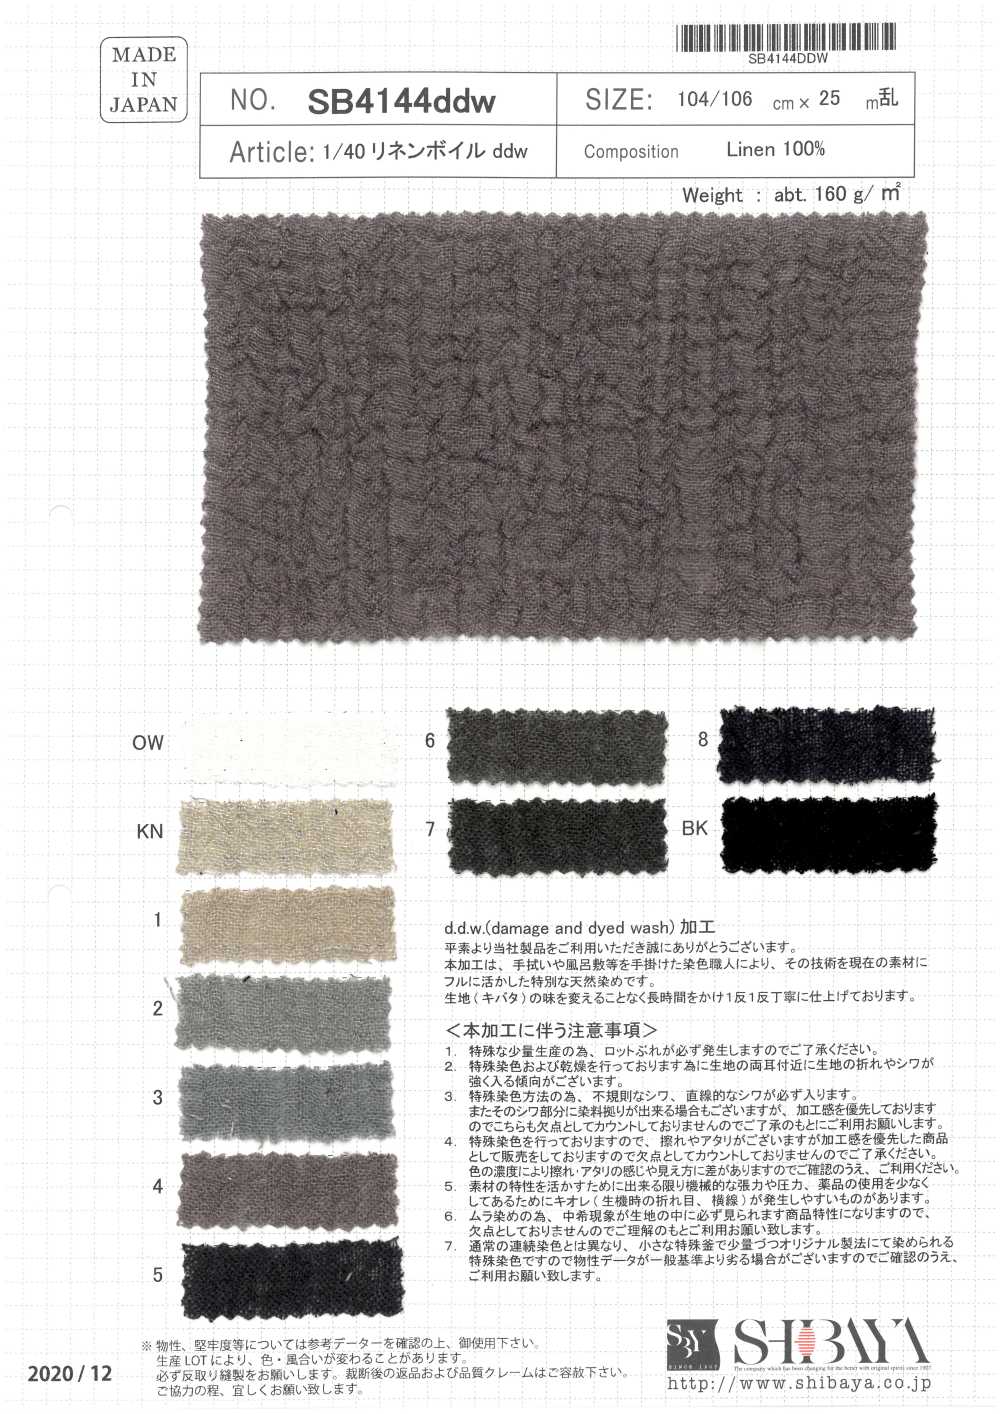 SB4144ddw 1/40 Lino Voile DDW[Fabrica Textil] SHIBAYA